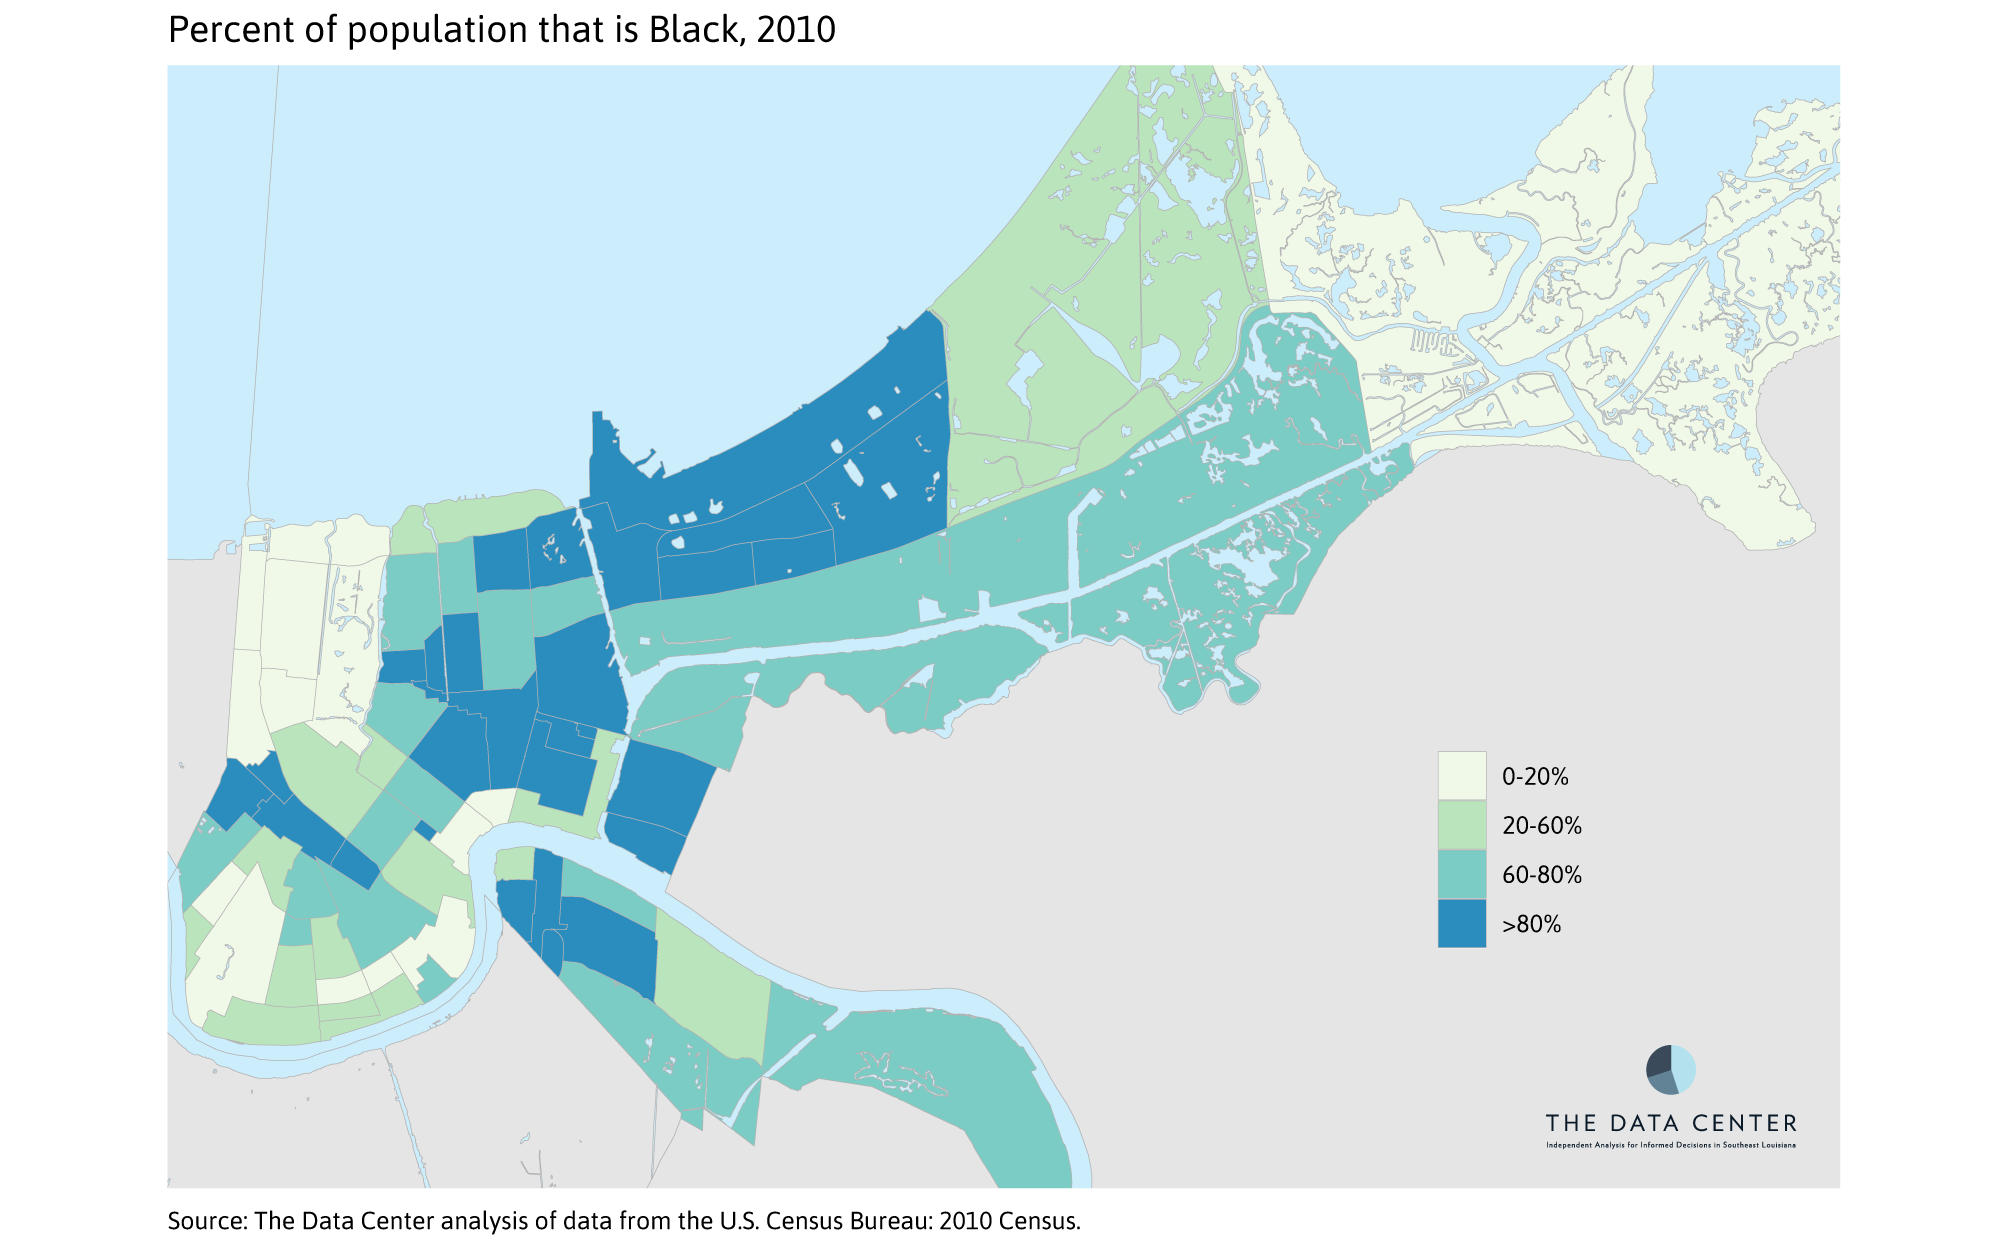 Percent Black 2010